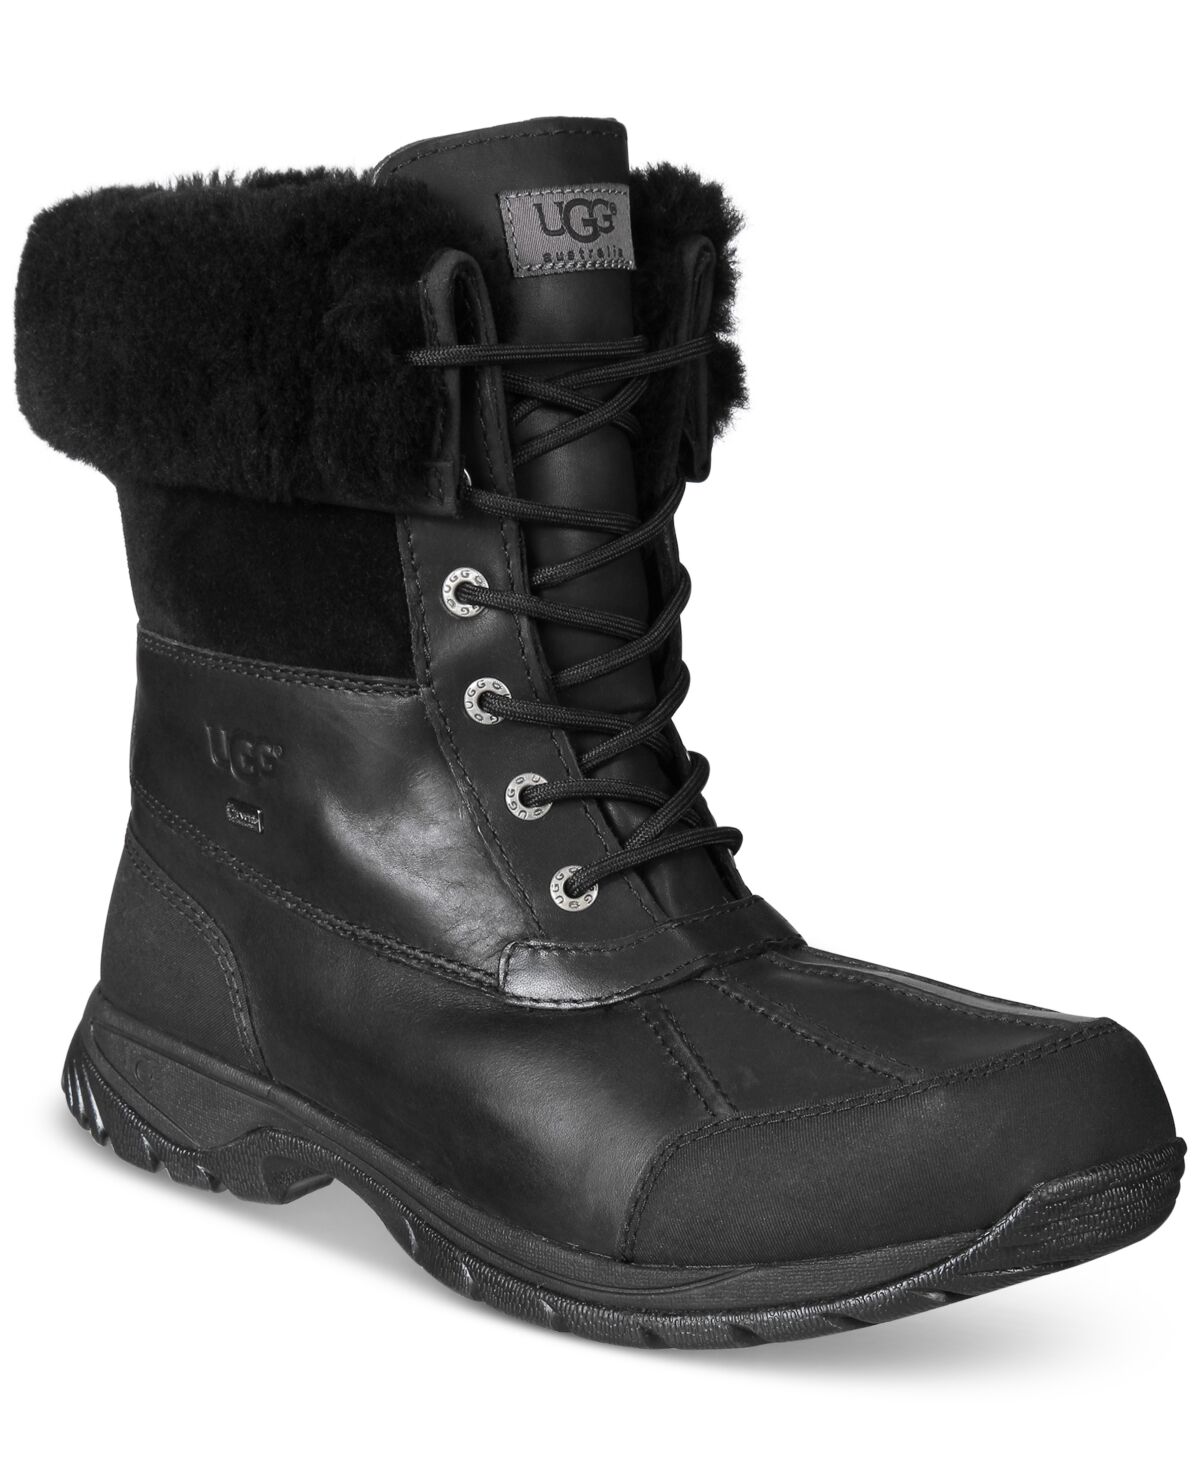 Ugg Men's Waterproof Butte Boots - Black